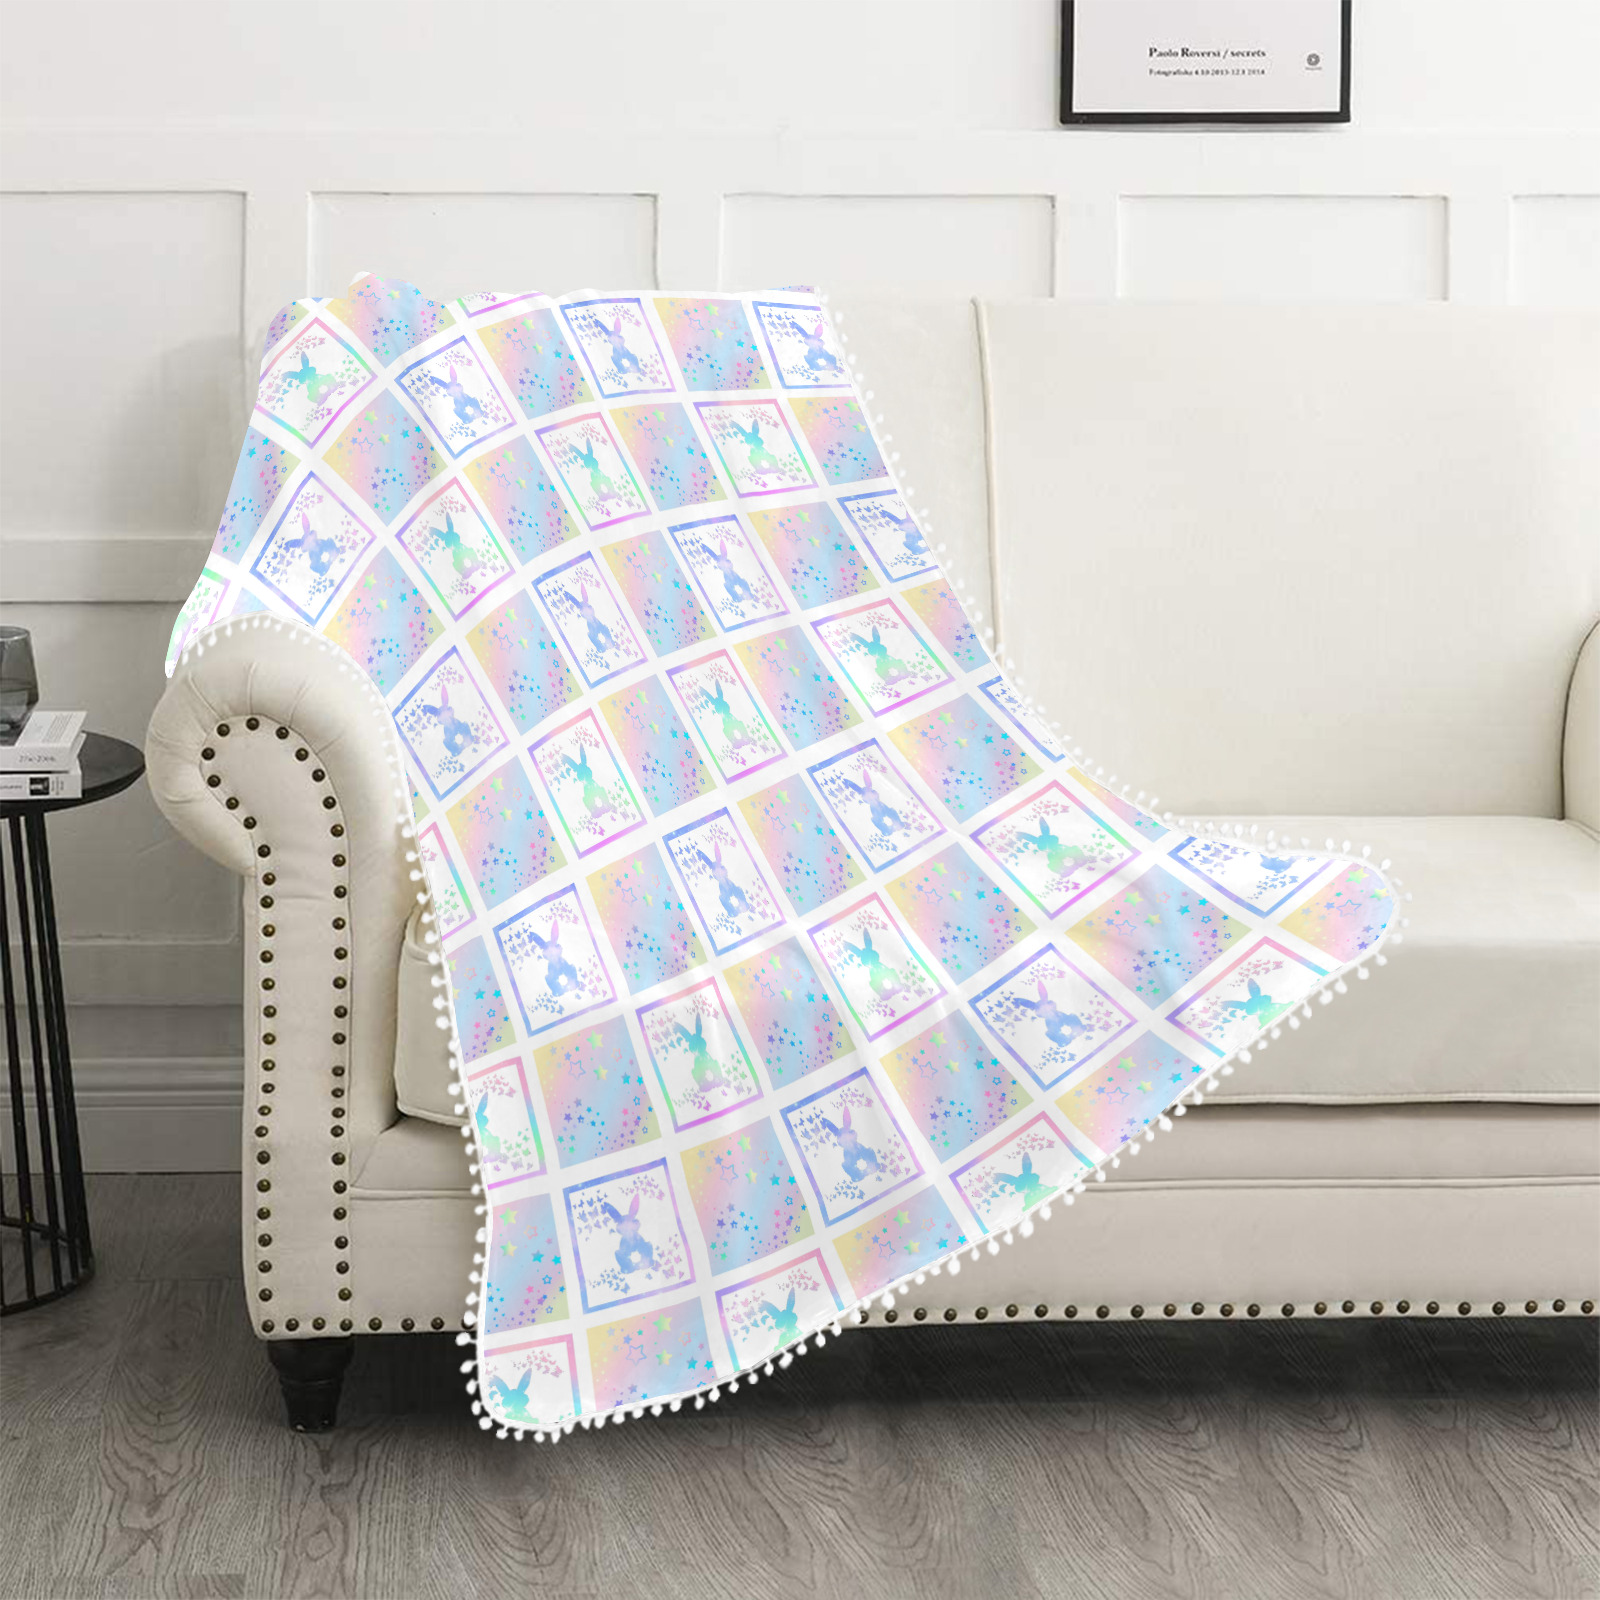 Bunny Magic Square Patch Artwork Design Pom Pom Fringe Blanket 40"x50"